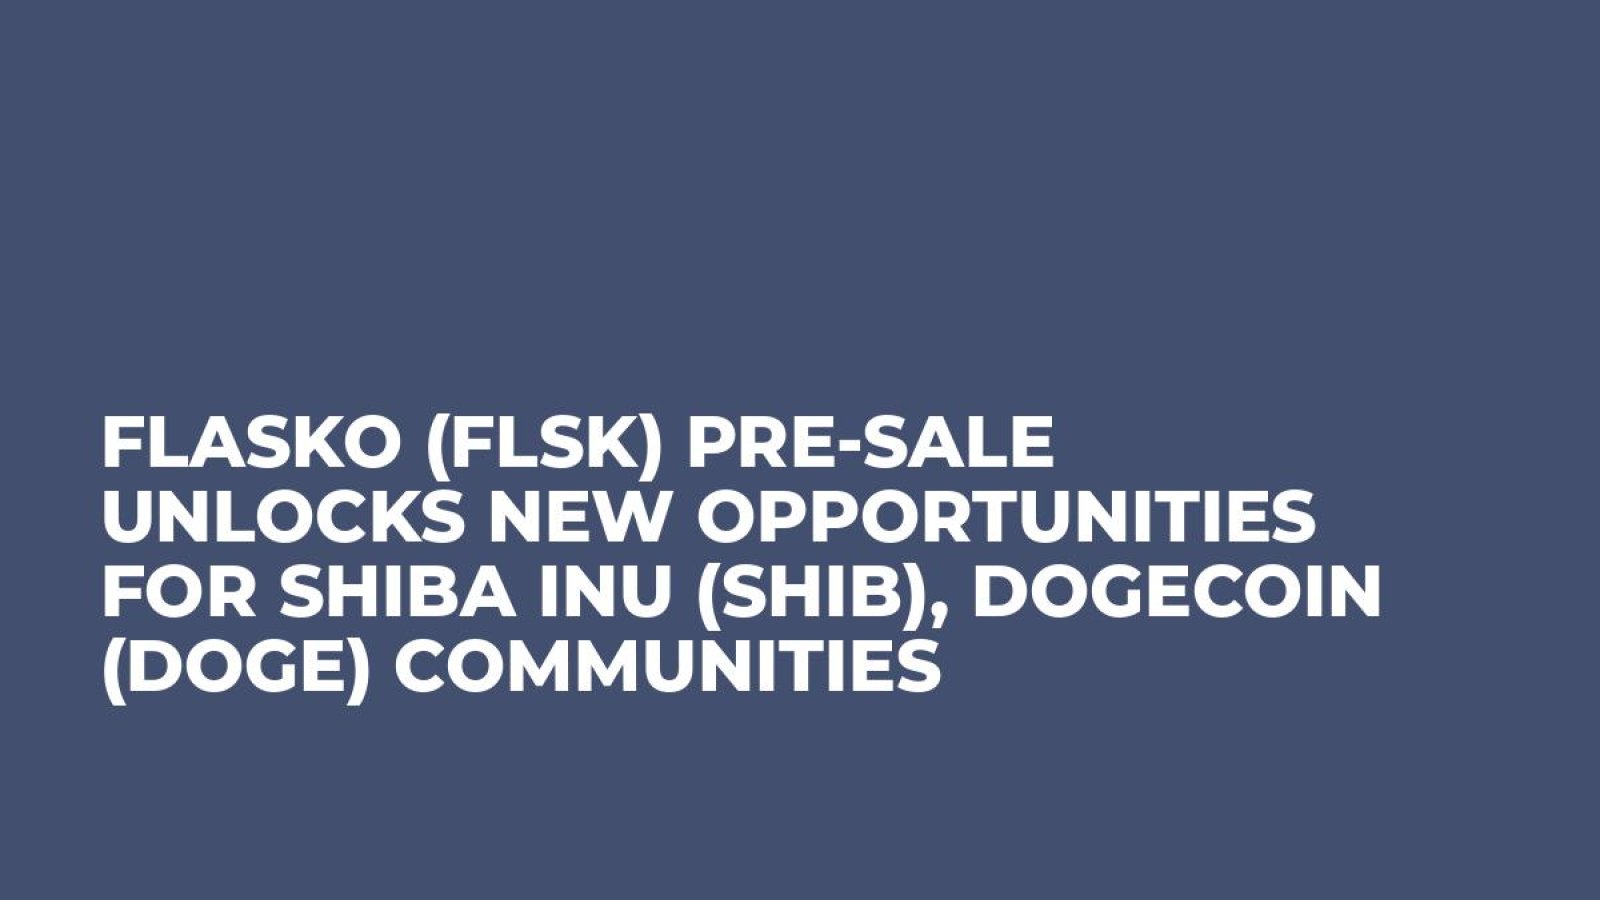 Flasko (FLSK) Pre-Sale Unlocks New Opportunities for Shiba Inu (SHIB), Dogecoin (DOGE) Communities